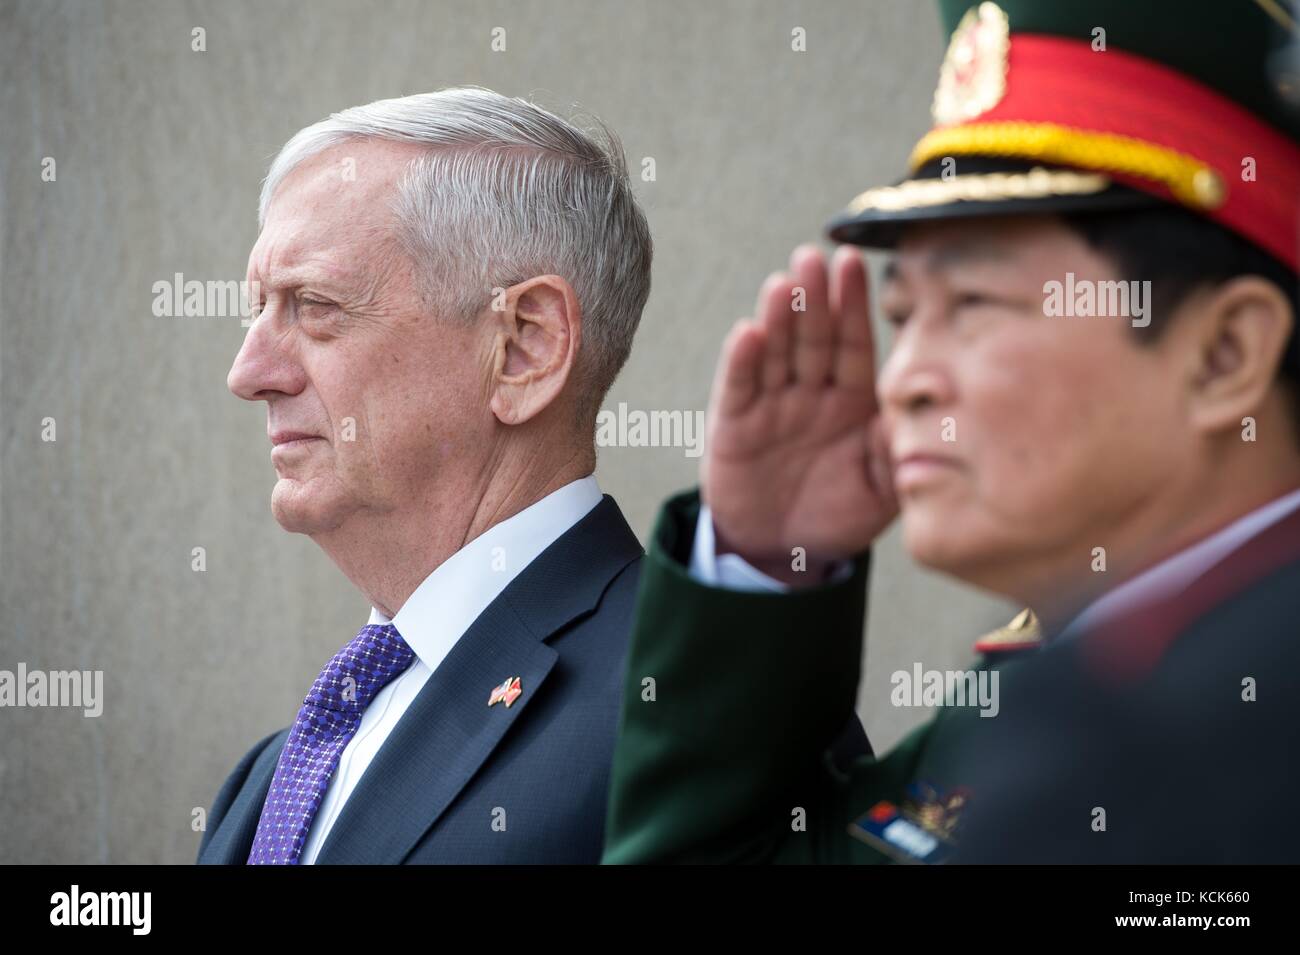 Negli Stati Uniti il segretario della difesa james mattis (sinistra) soddisfa con cittadino vietnamita il ministro della difesa di ong xuan lich al Pentagono il 8 agosto 2017 a Washington, DC. (Foto di jette carr via planetpix) Foto Stock